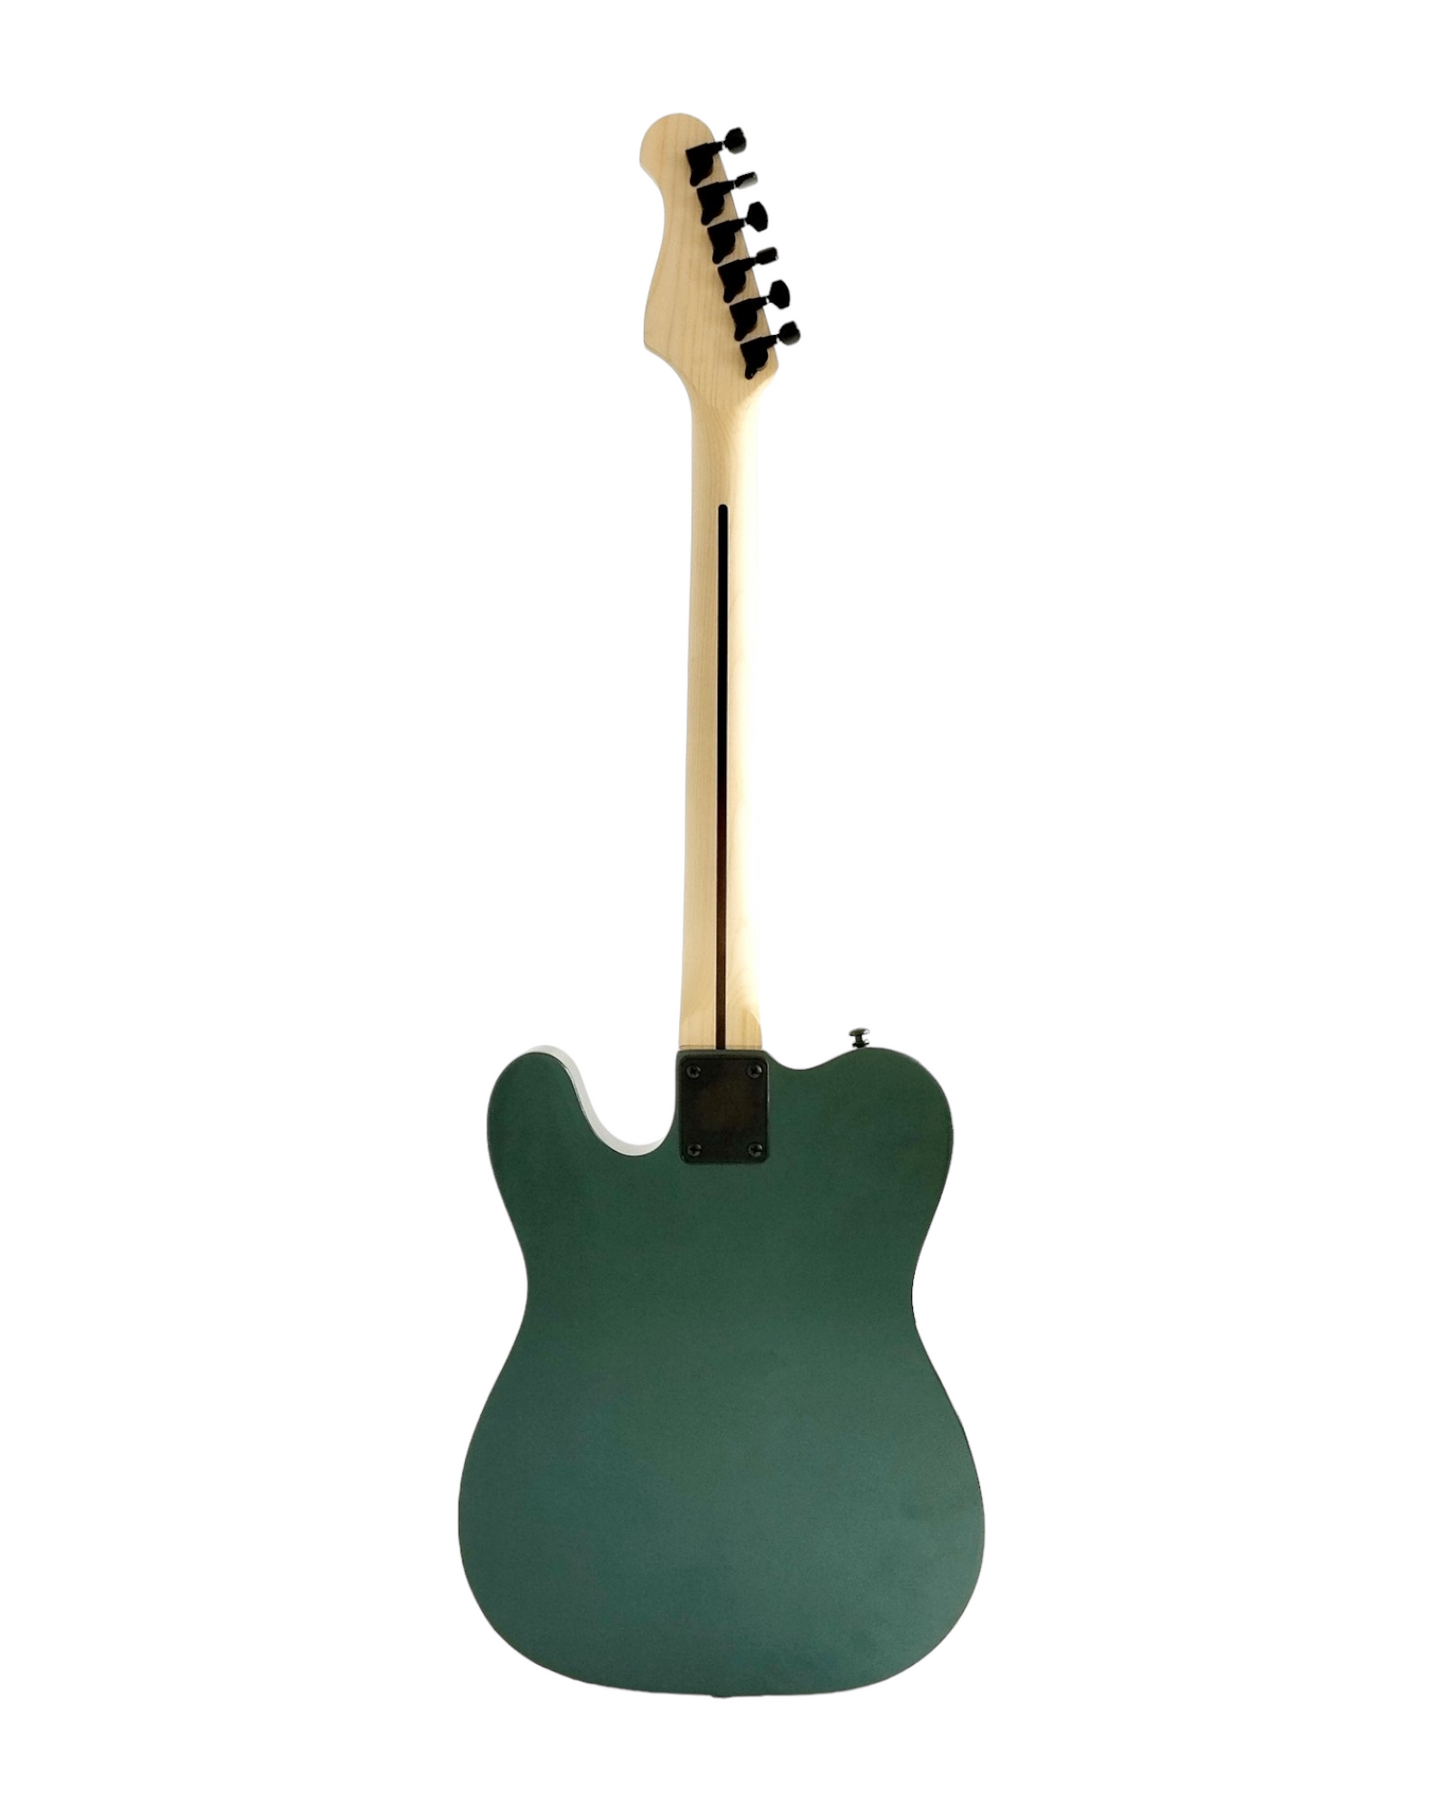 Haze Chameleon Maple Neck Single-Cut HTL Electric Guitar - Chameleon SEG287V